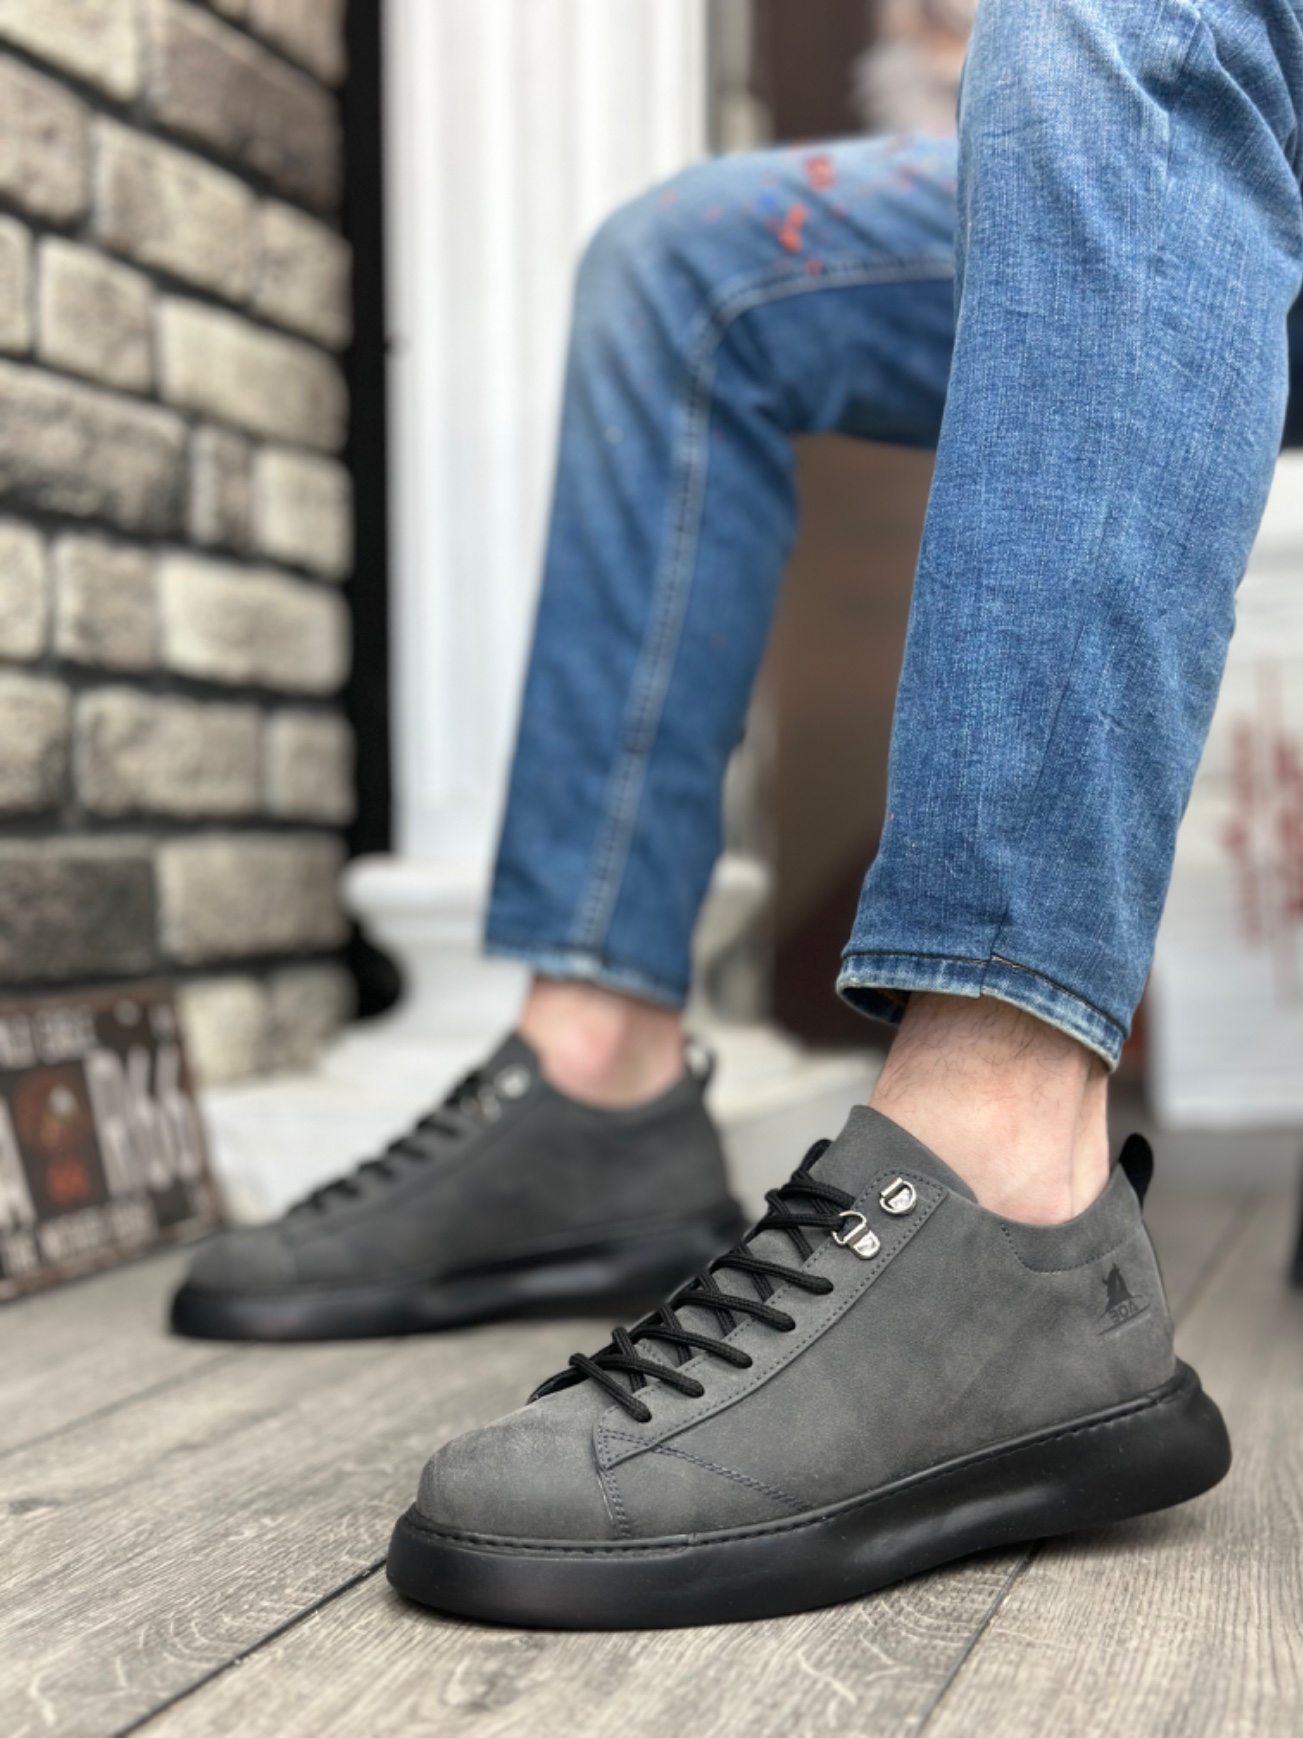 unisex sneakers on fbazaar 1-year warranty